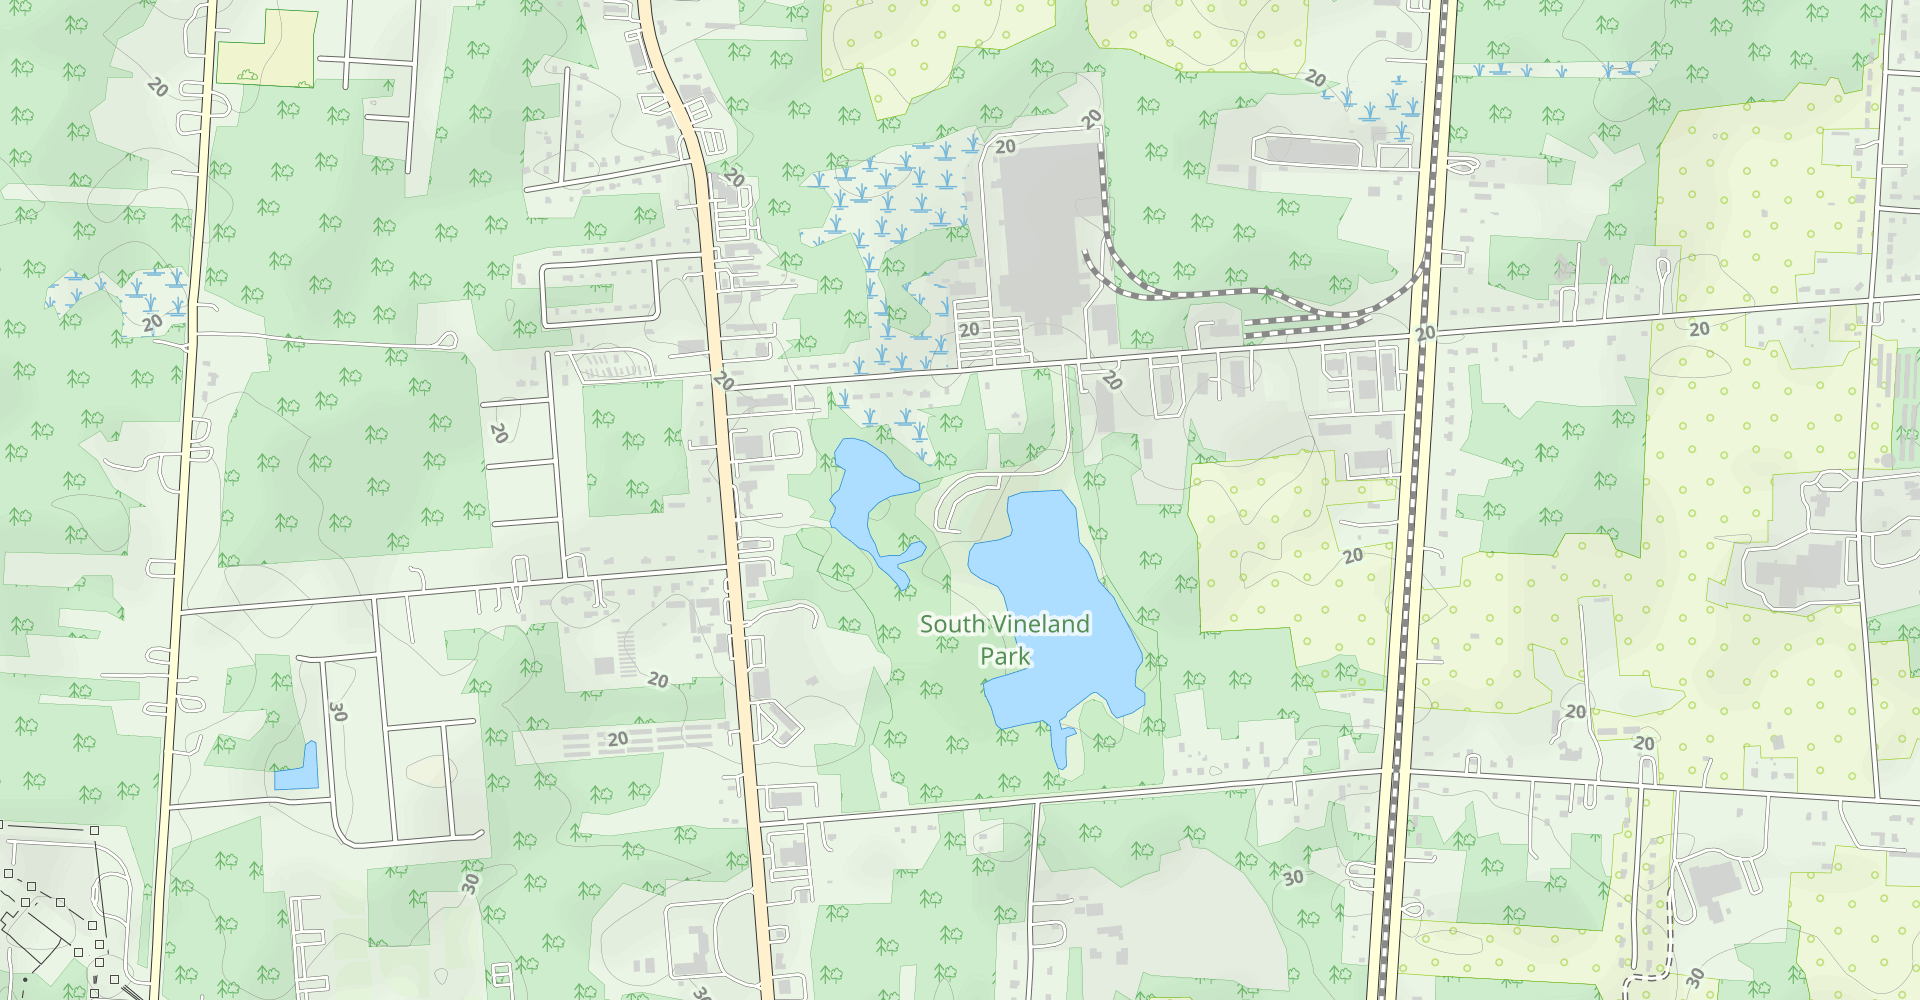 South Vineland Park Loop